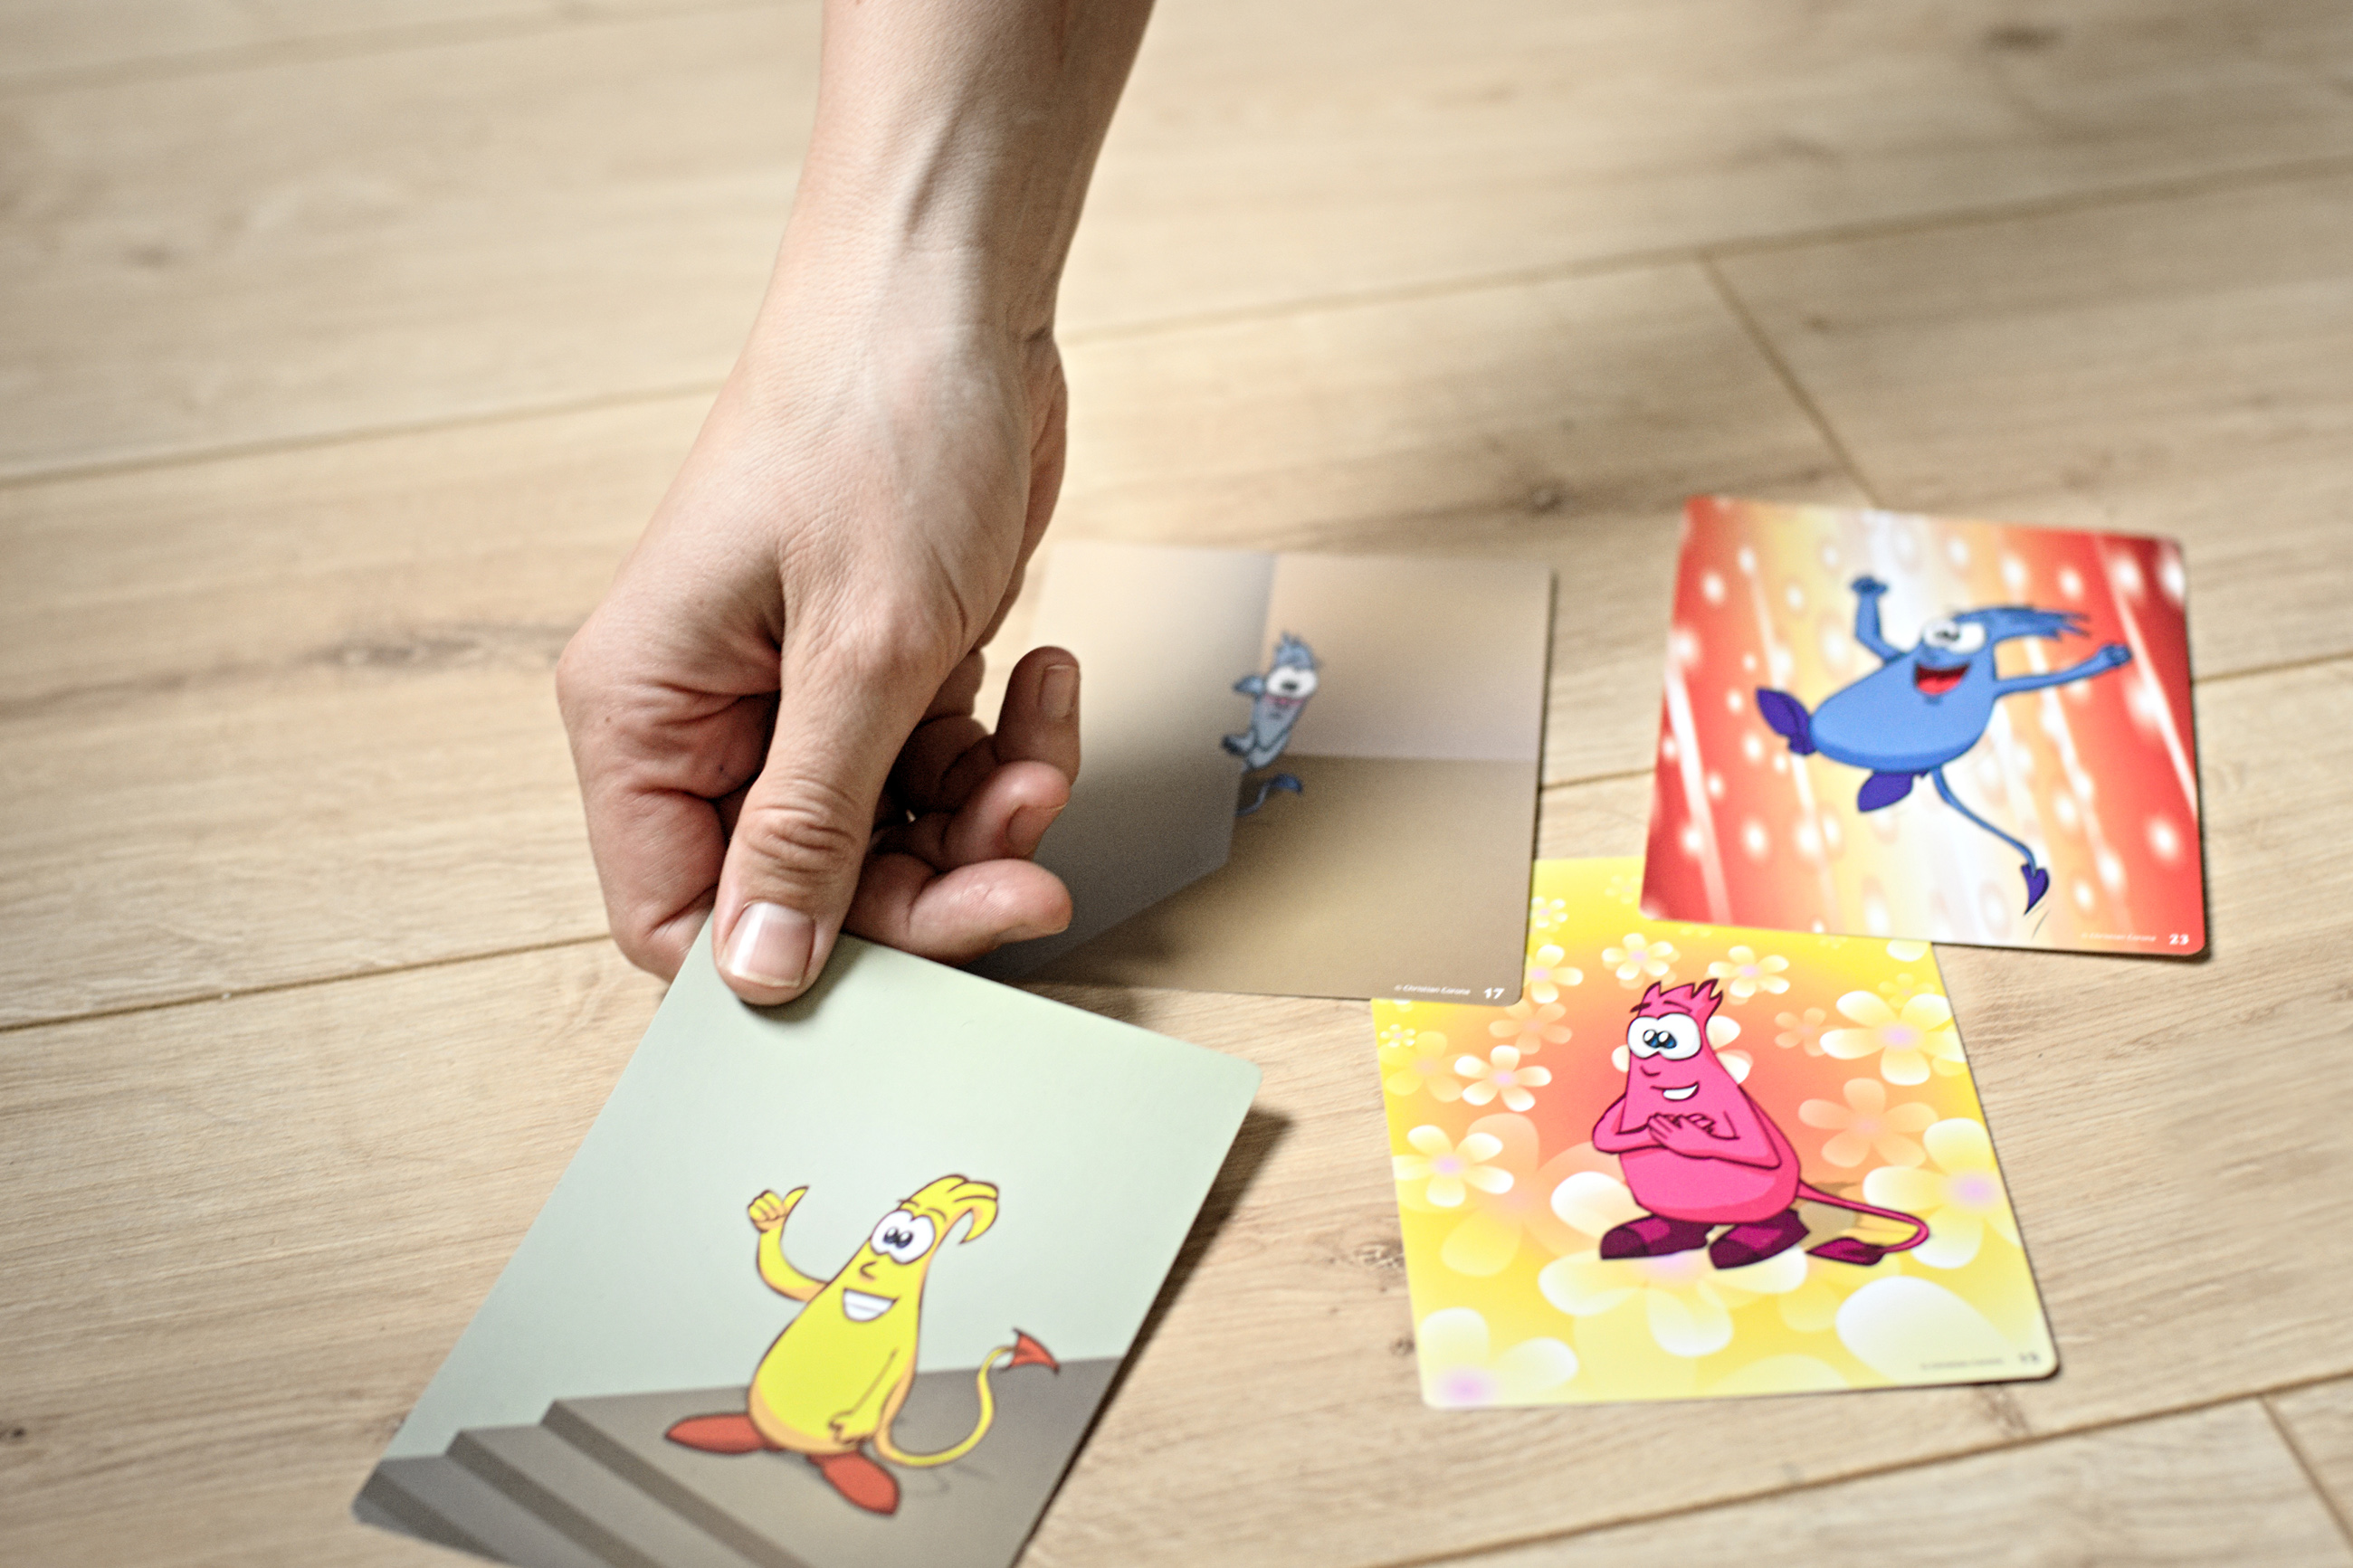 Eine Hand legt auf einen Holzboden sogenannte Monsterkarten. Das sind Moderationskarten mit Monstern, die verschiedene Emotionen zum Ausdruck bringen. Die eine Karte zeigt ein gelbes Monster mit Daumen hoch am oberen Ende einer Treppe. Auf einer anderen K